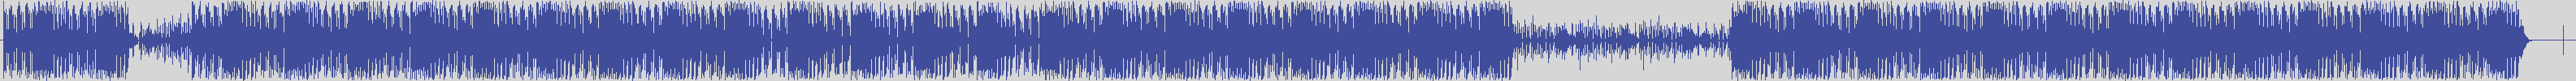 nf_boyz_records [NFY037] Kreeze - Dancefloor [Original Mix] audio wave form